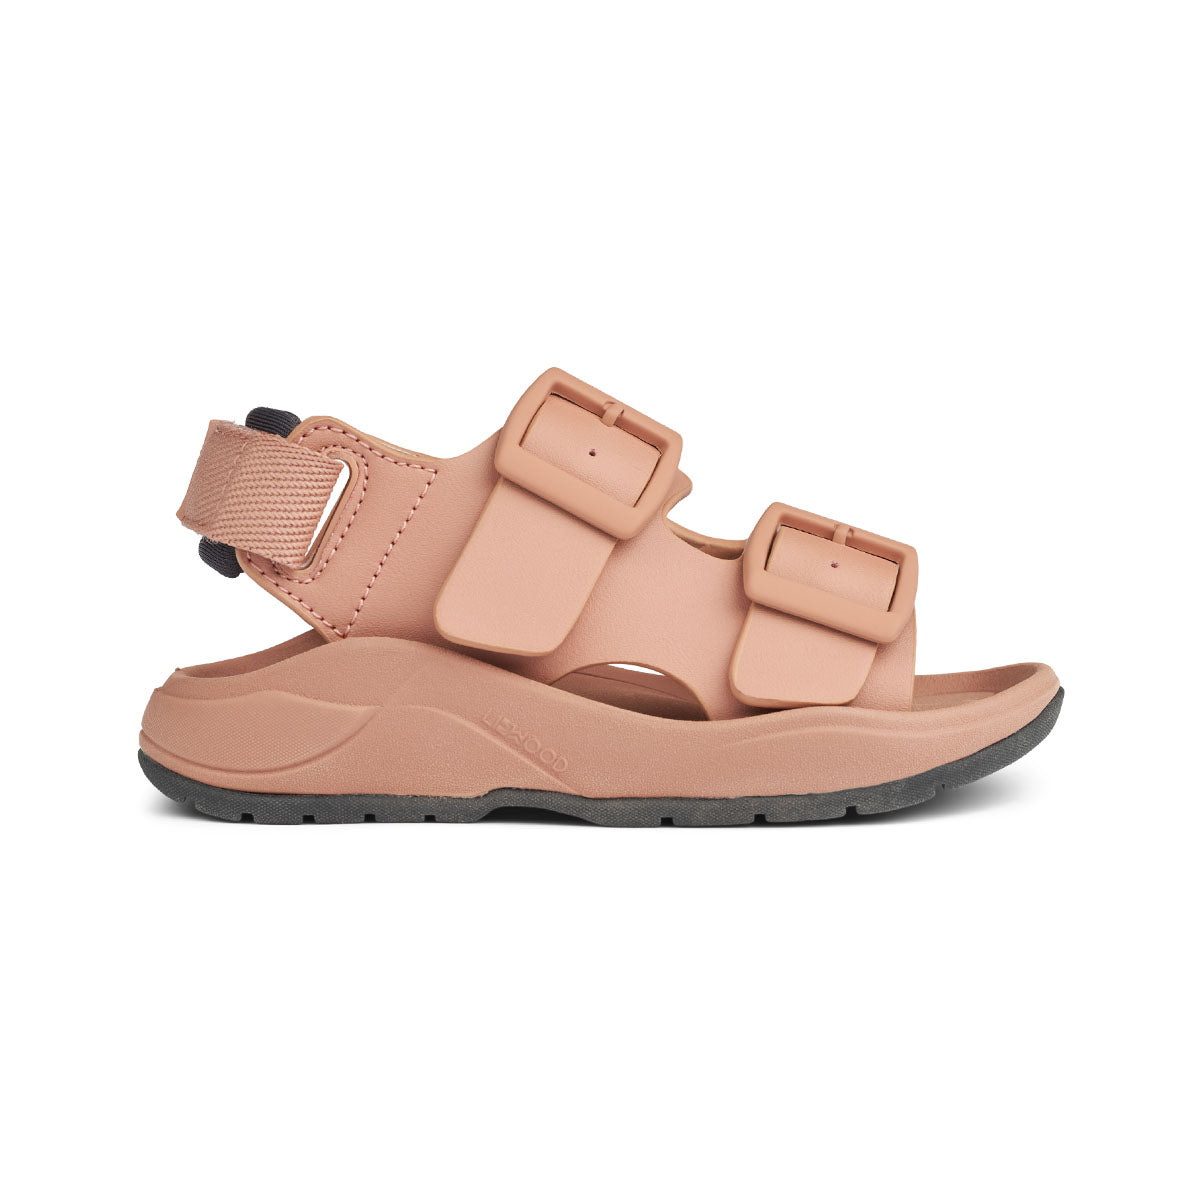 Ben je op zoek naar praktische én leuk uitziende sandalen? Dan zijn deze anni sandalen van Liewood in de kleur tuscany rose ideaal! Deze sandalen zitten namelijk enorm comfortabel, dankzij het ergonomische voetbed, maar zien er ook stijlvol uit. VanZus